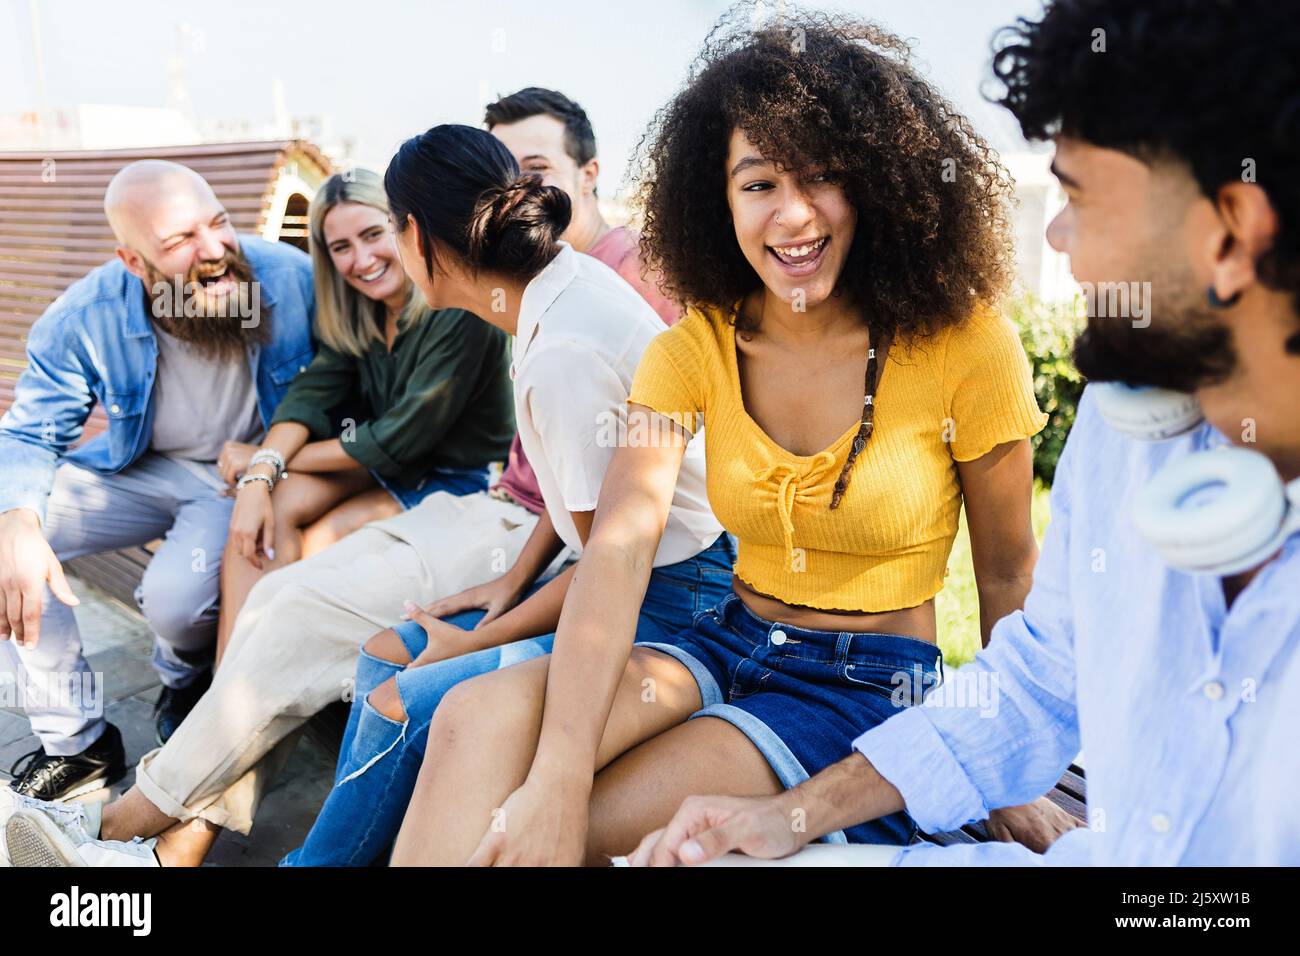 Groupe d'amis étudiants qui parlent et rient en s'asseyant ensemble à l'extérieur Banque D'Images